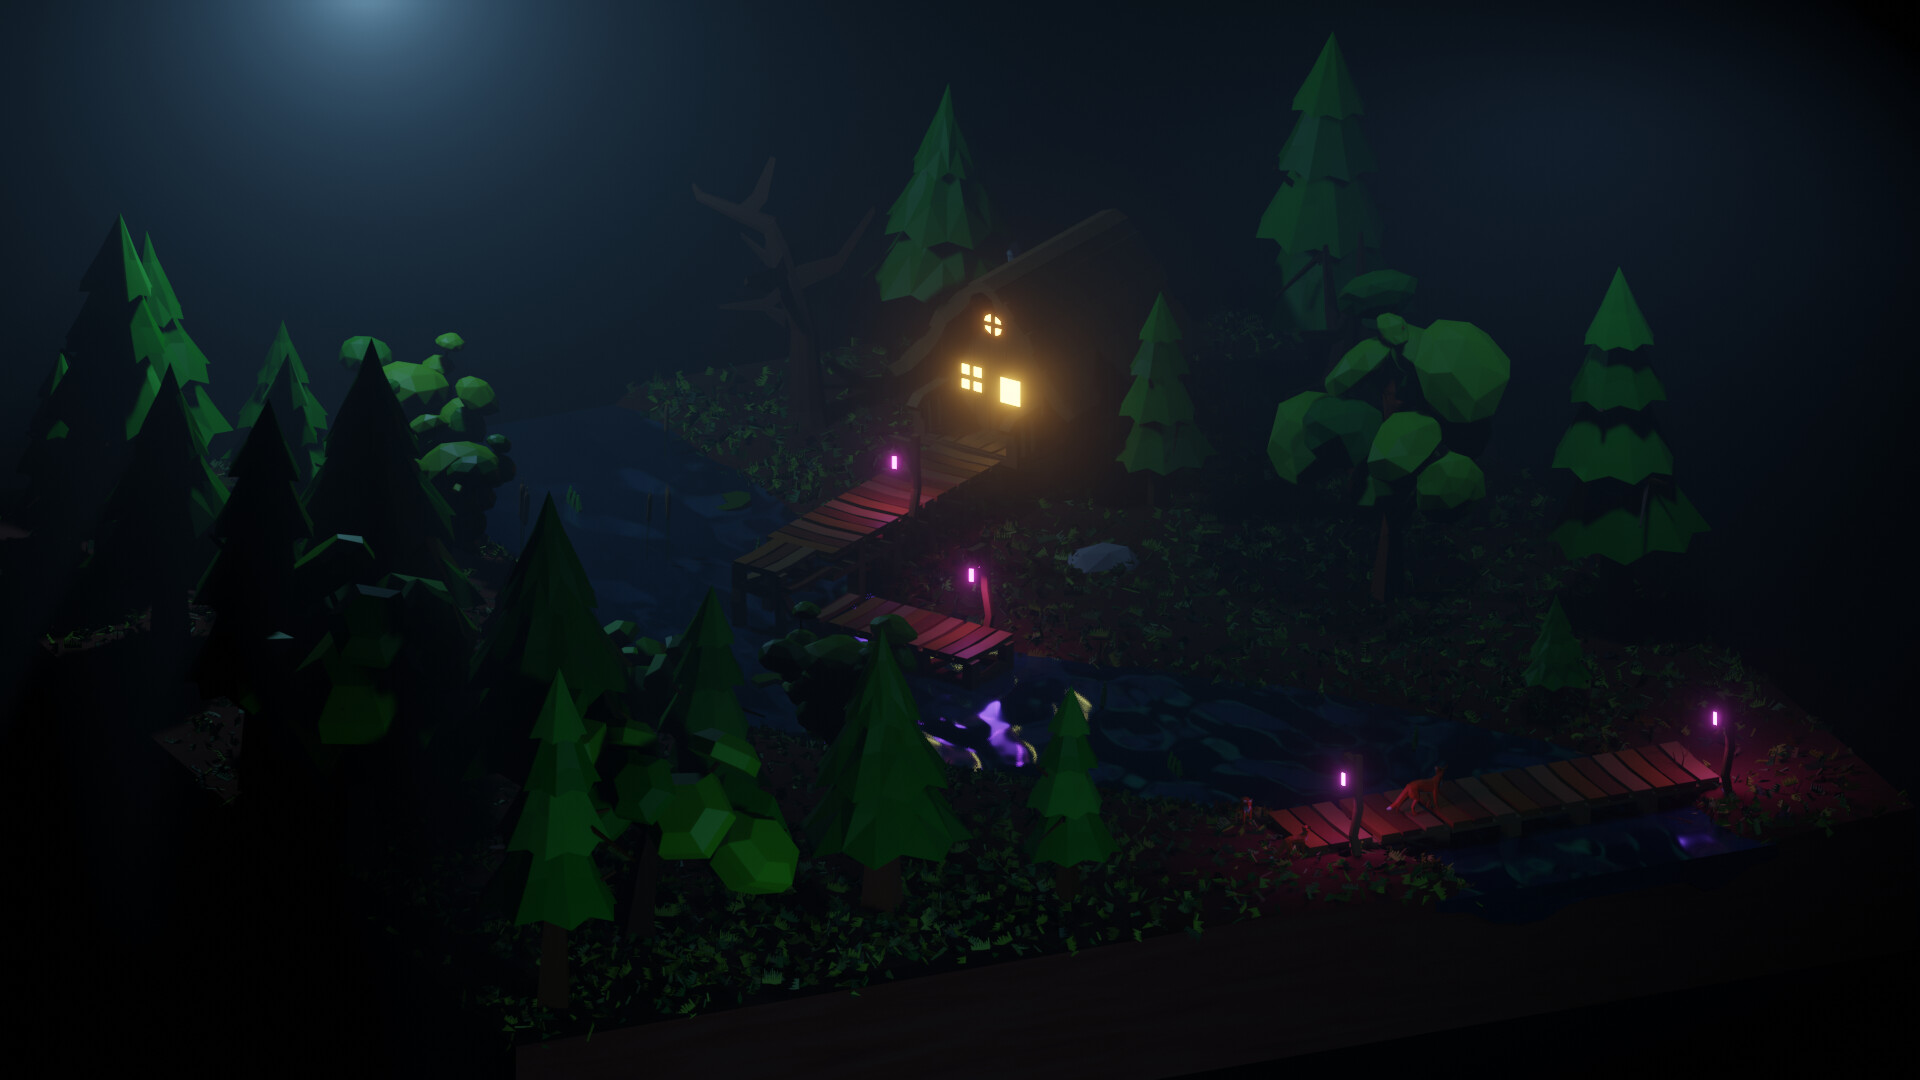 ArtStation - Night Forest scene